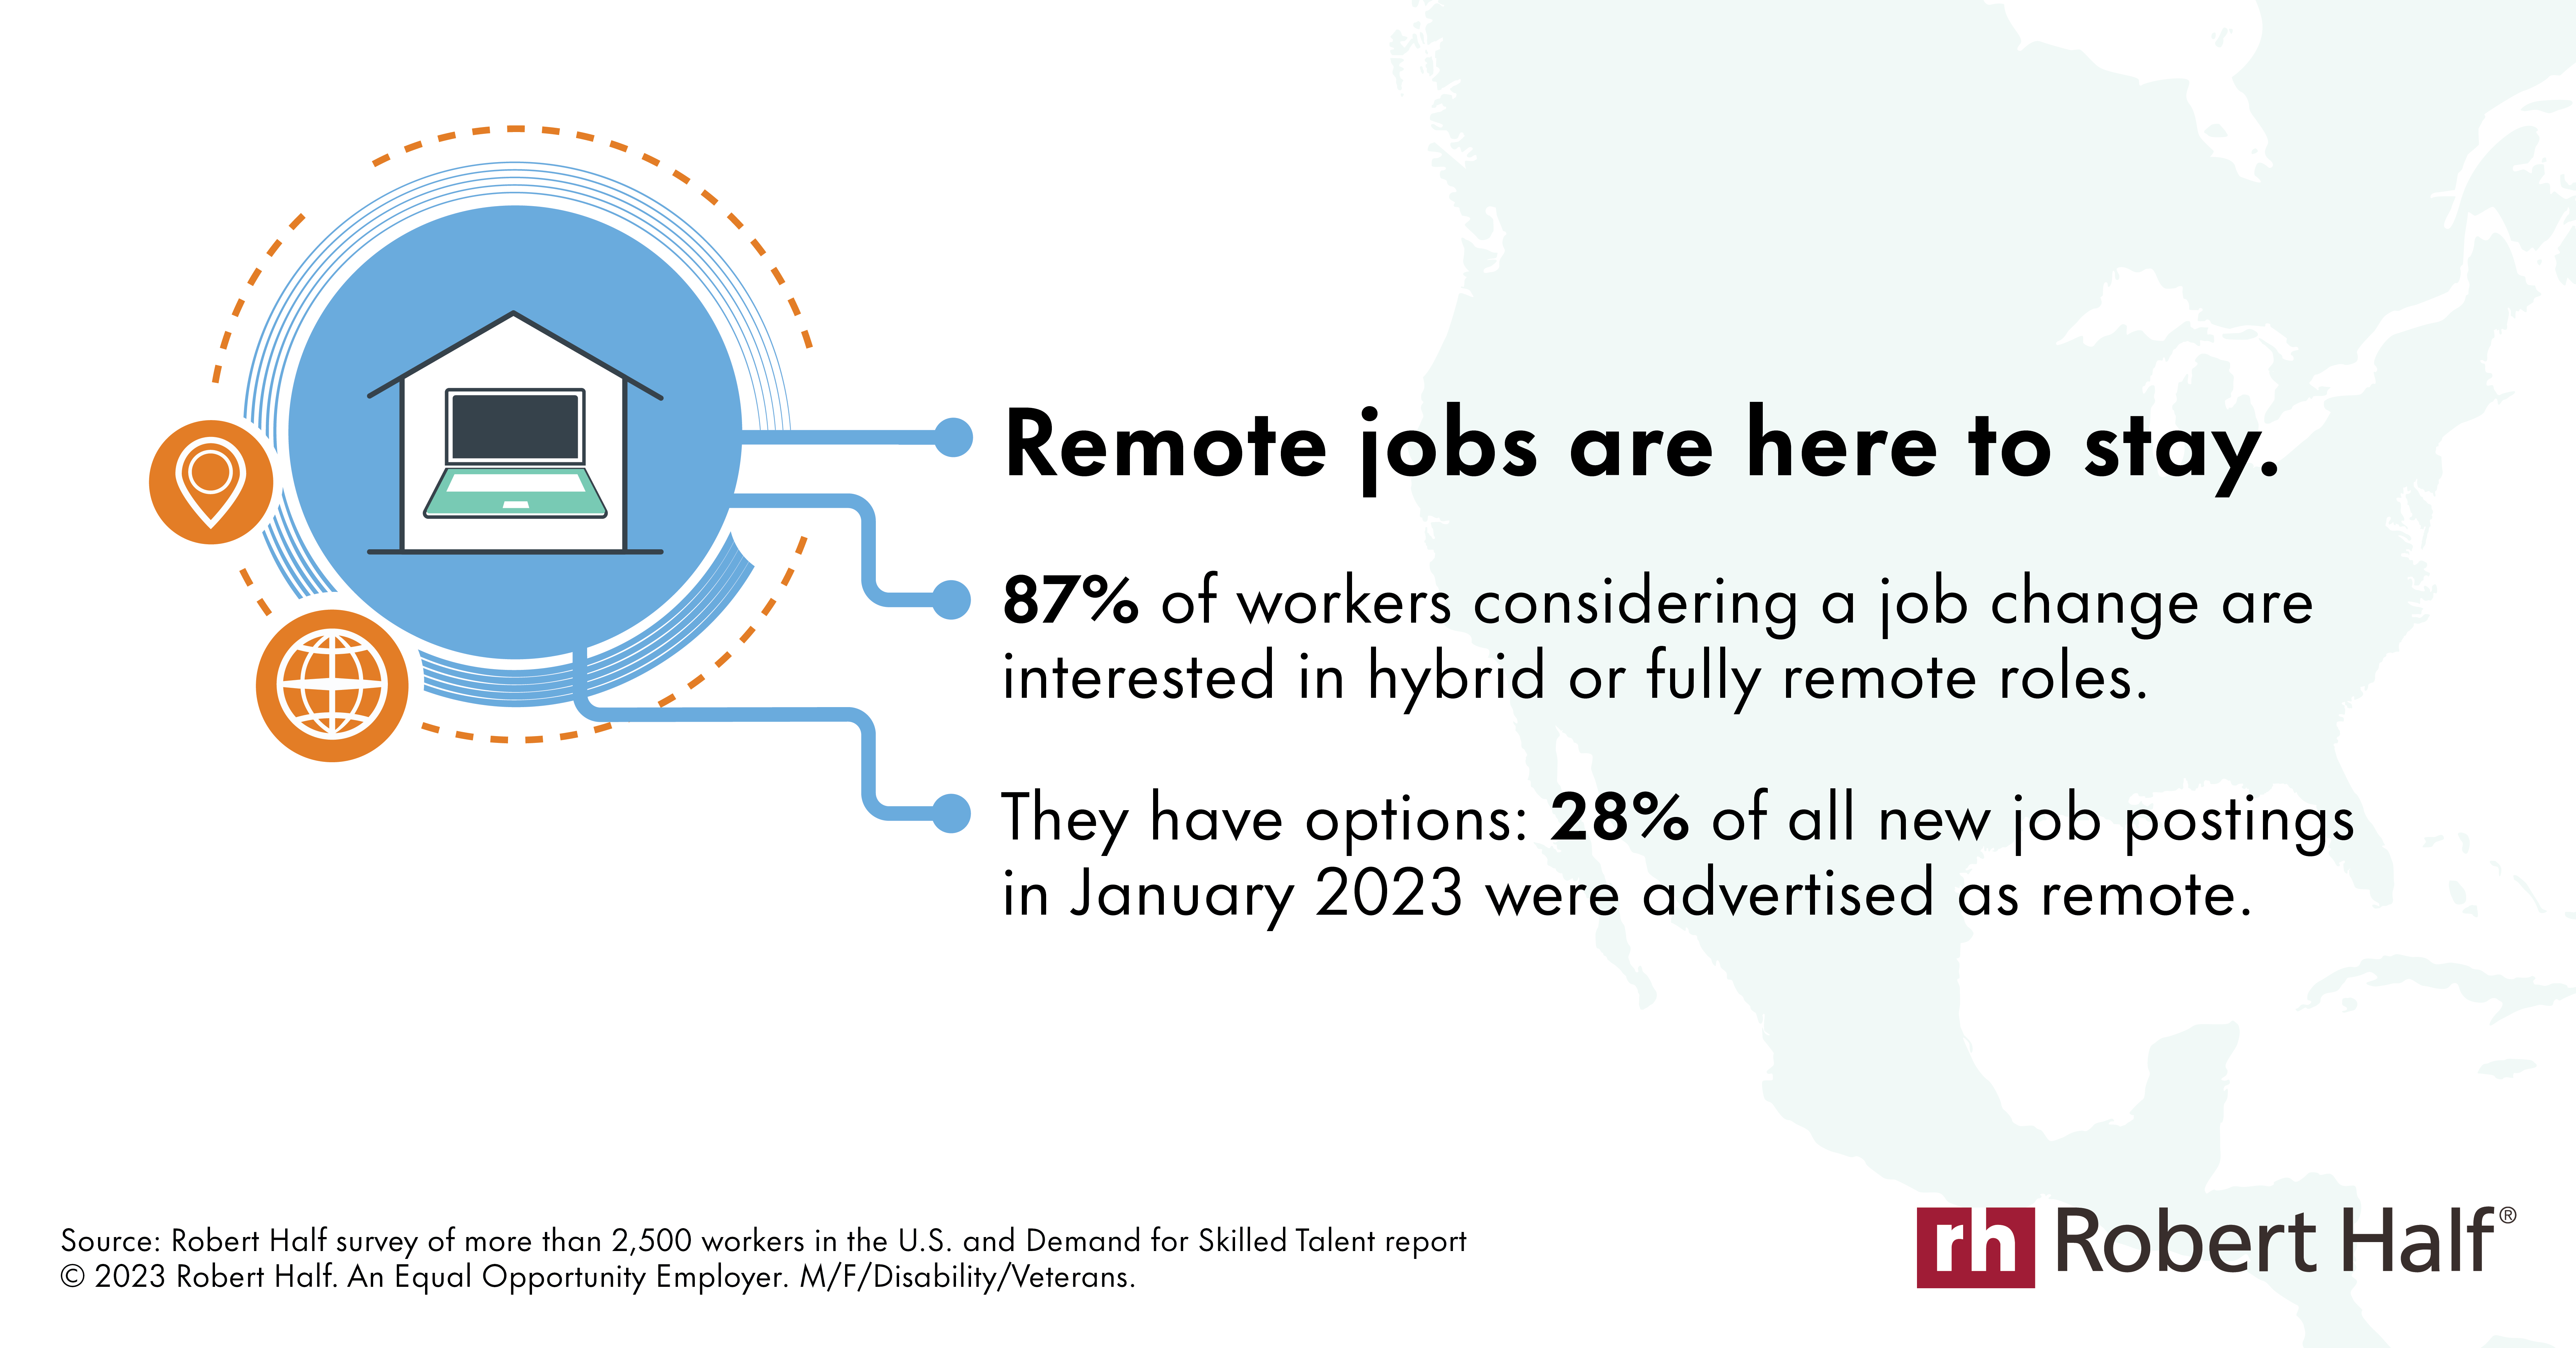 Remote Work Trends - Job Postings